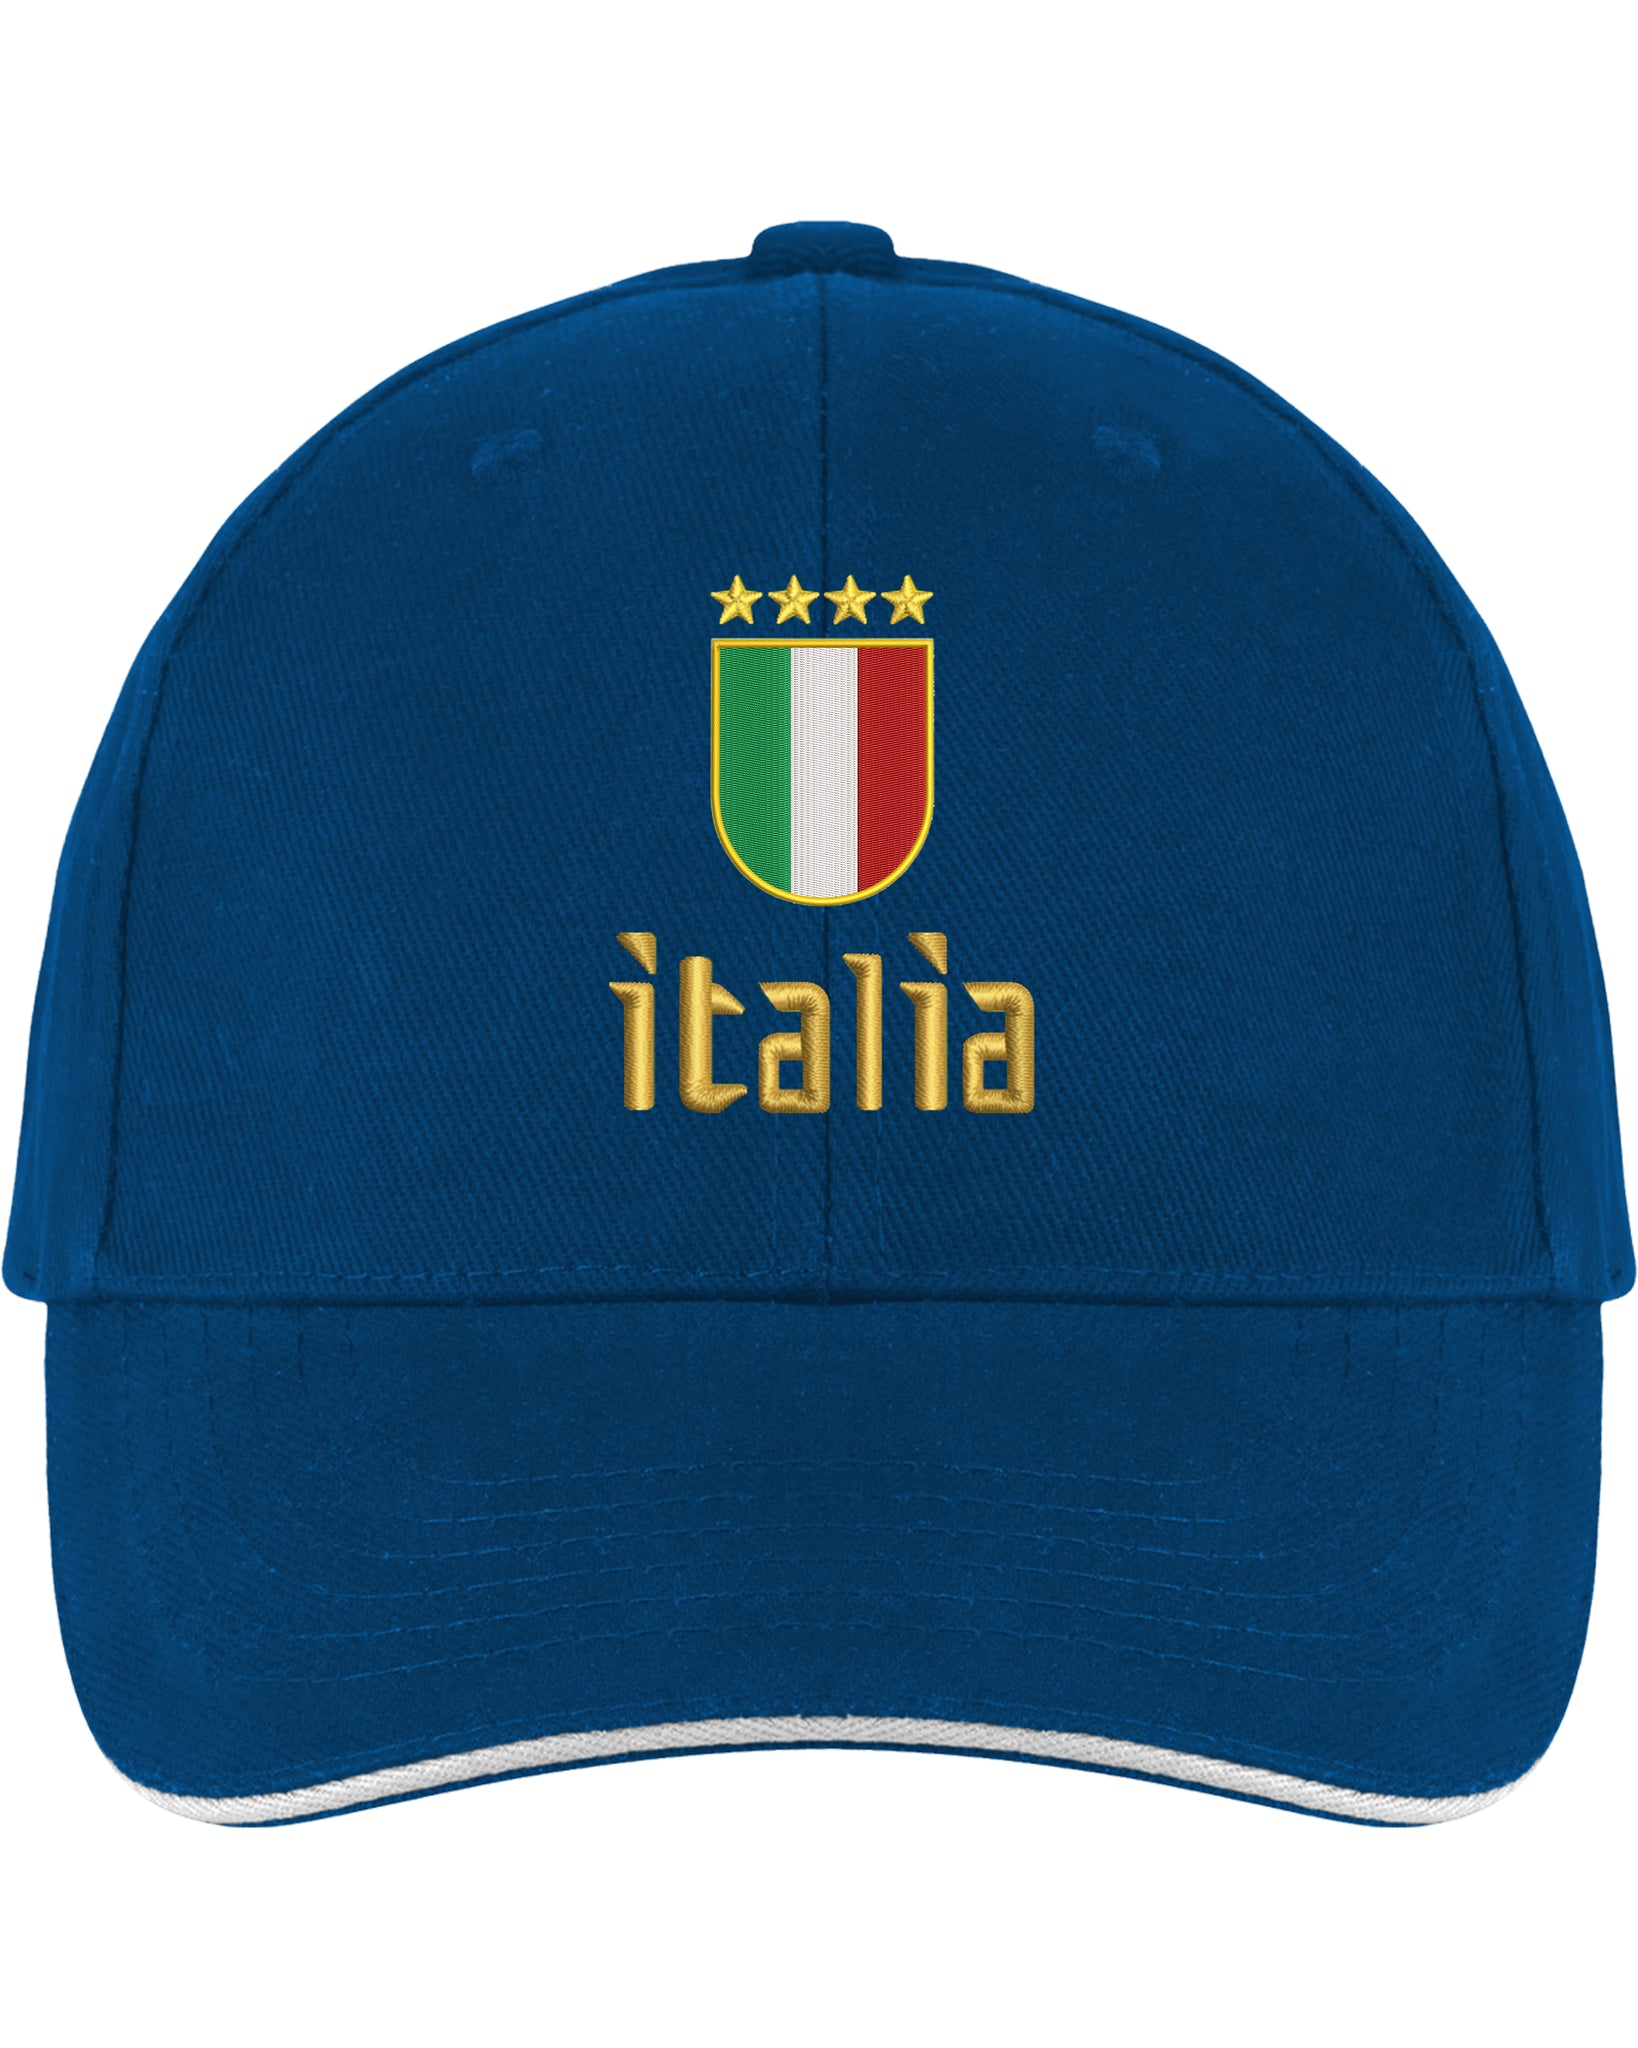 Italia Embroidered Cap